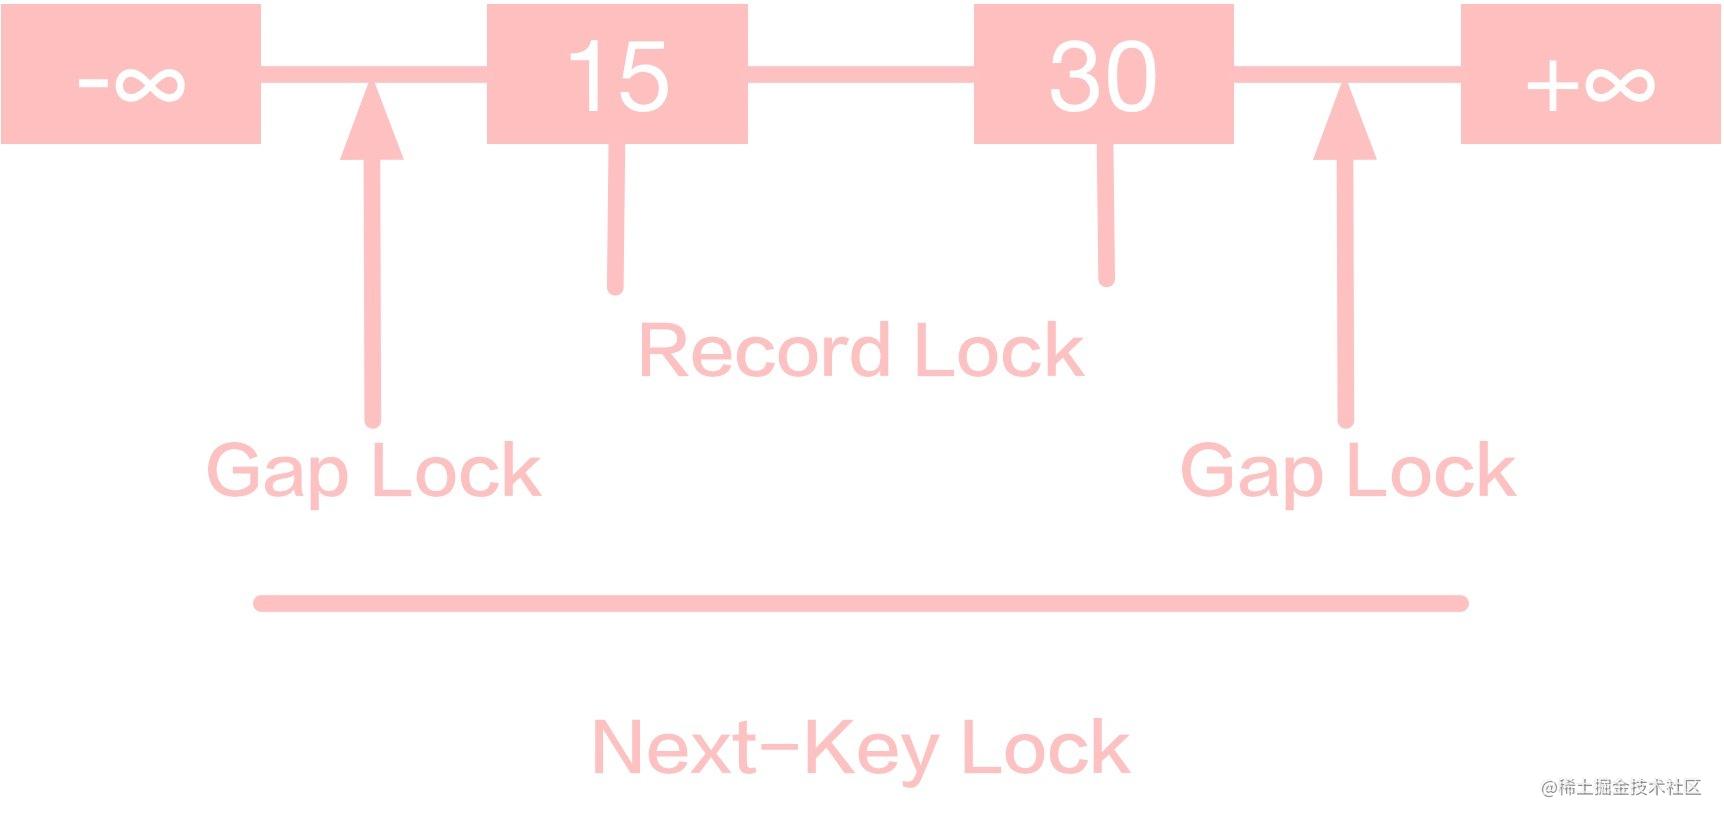 Next-Key Lock